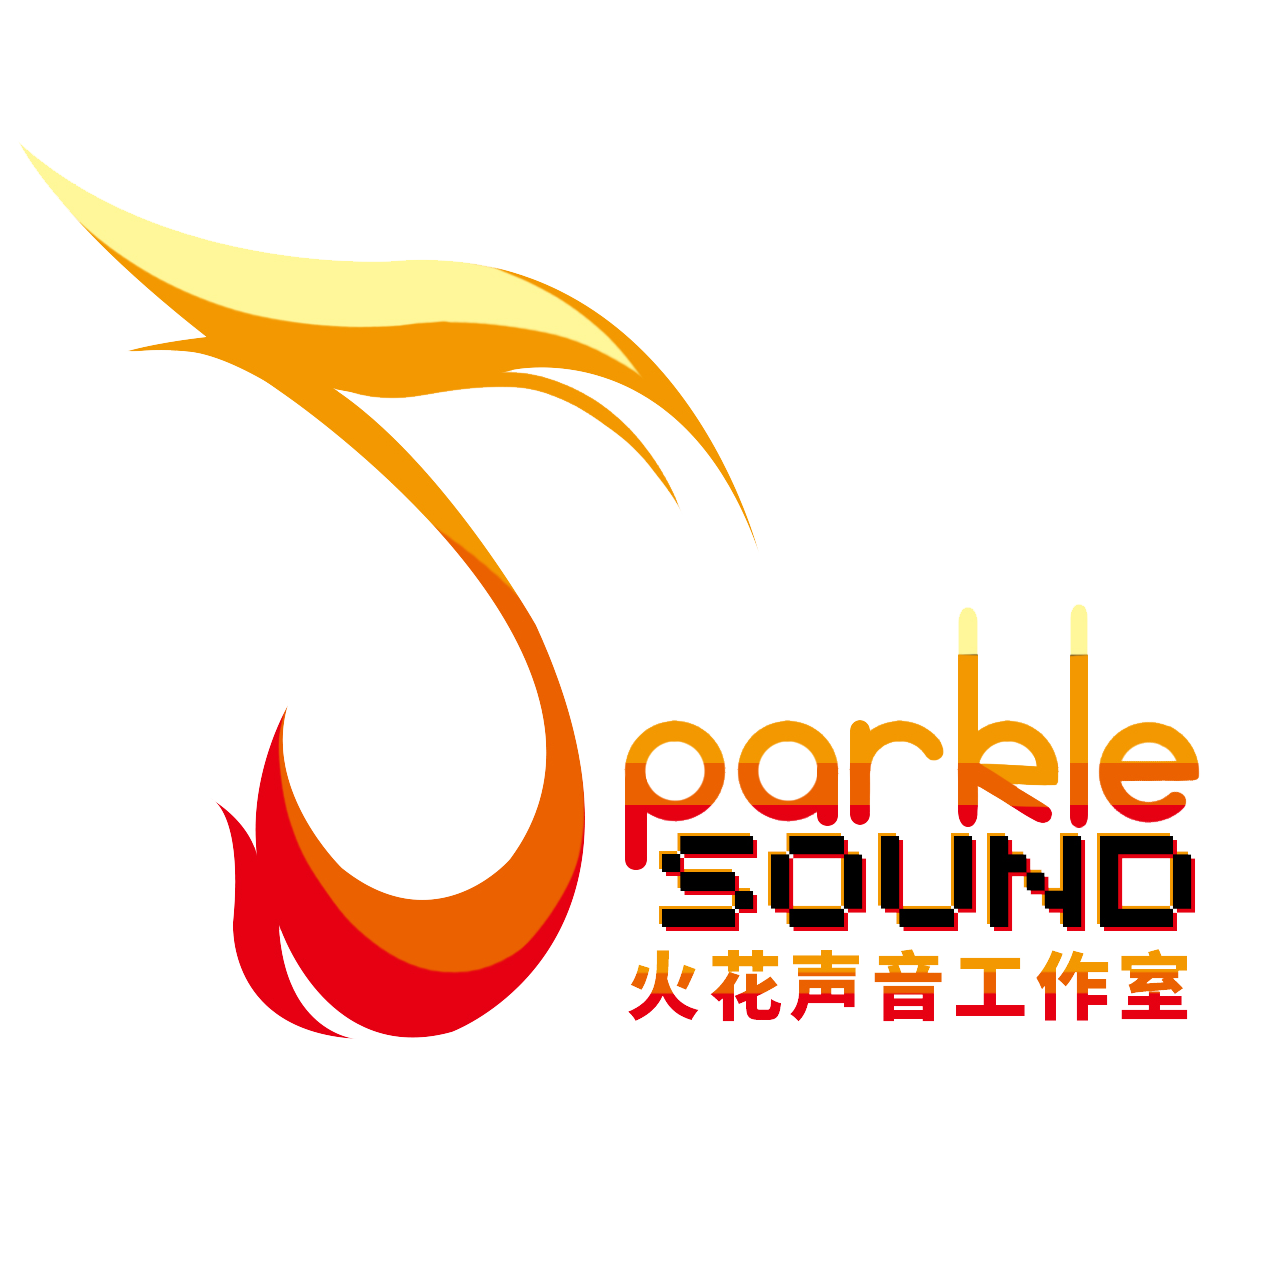 Parkle-logo.png